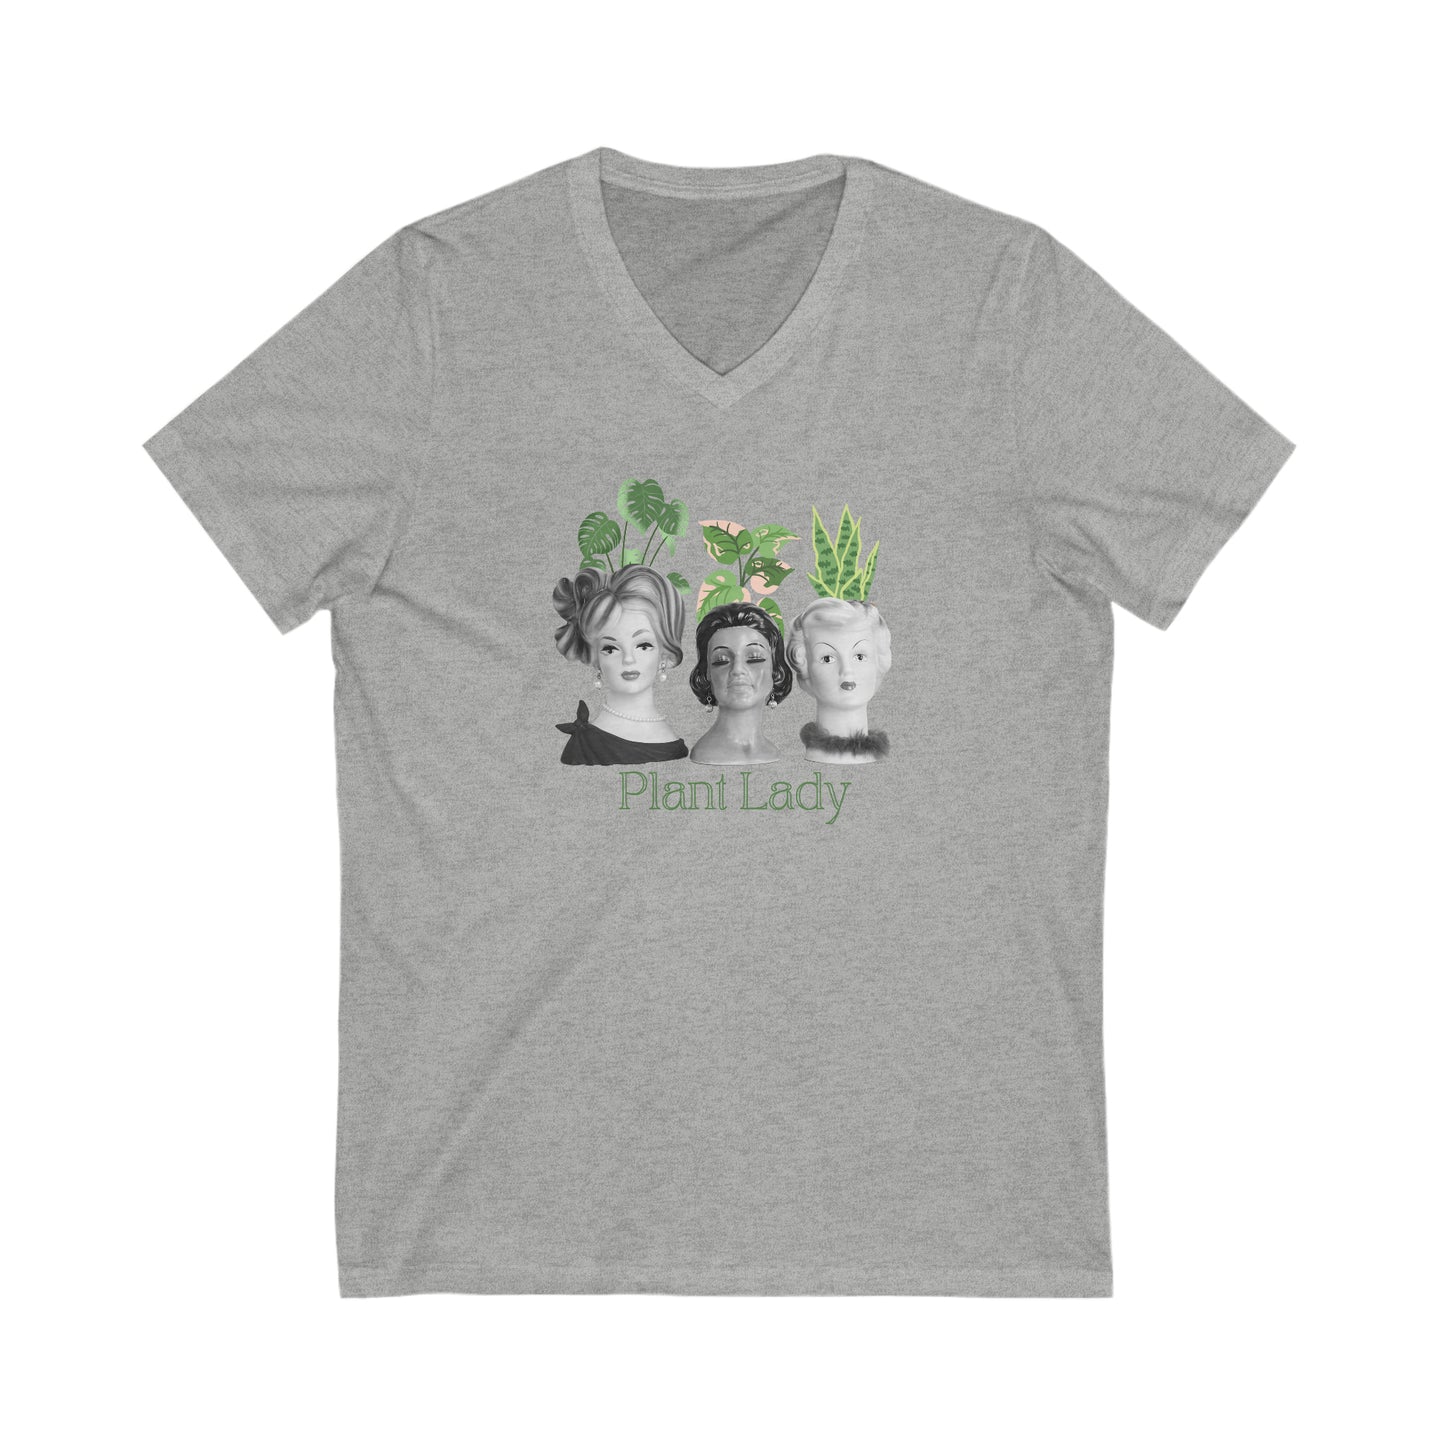 Plant Lady Shirt - Vintage Lady Head Vase Shirt - Plant Lady - Retro Shirt - Unisex Jersey Short Sleeve V-Neck Tee